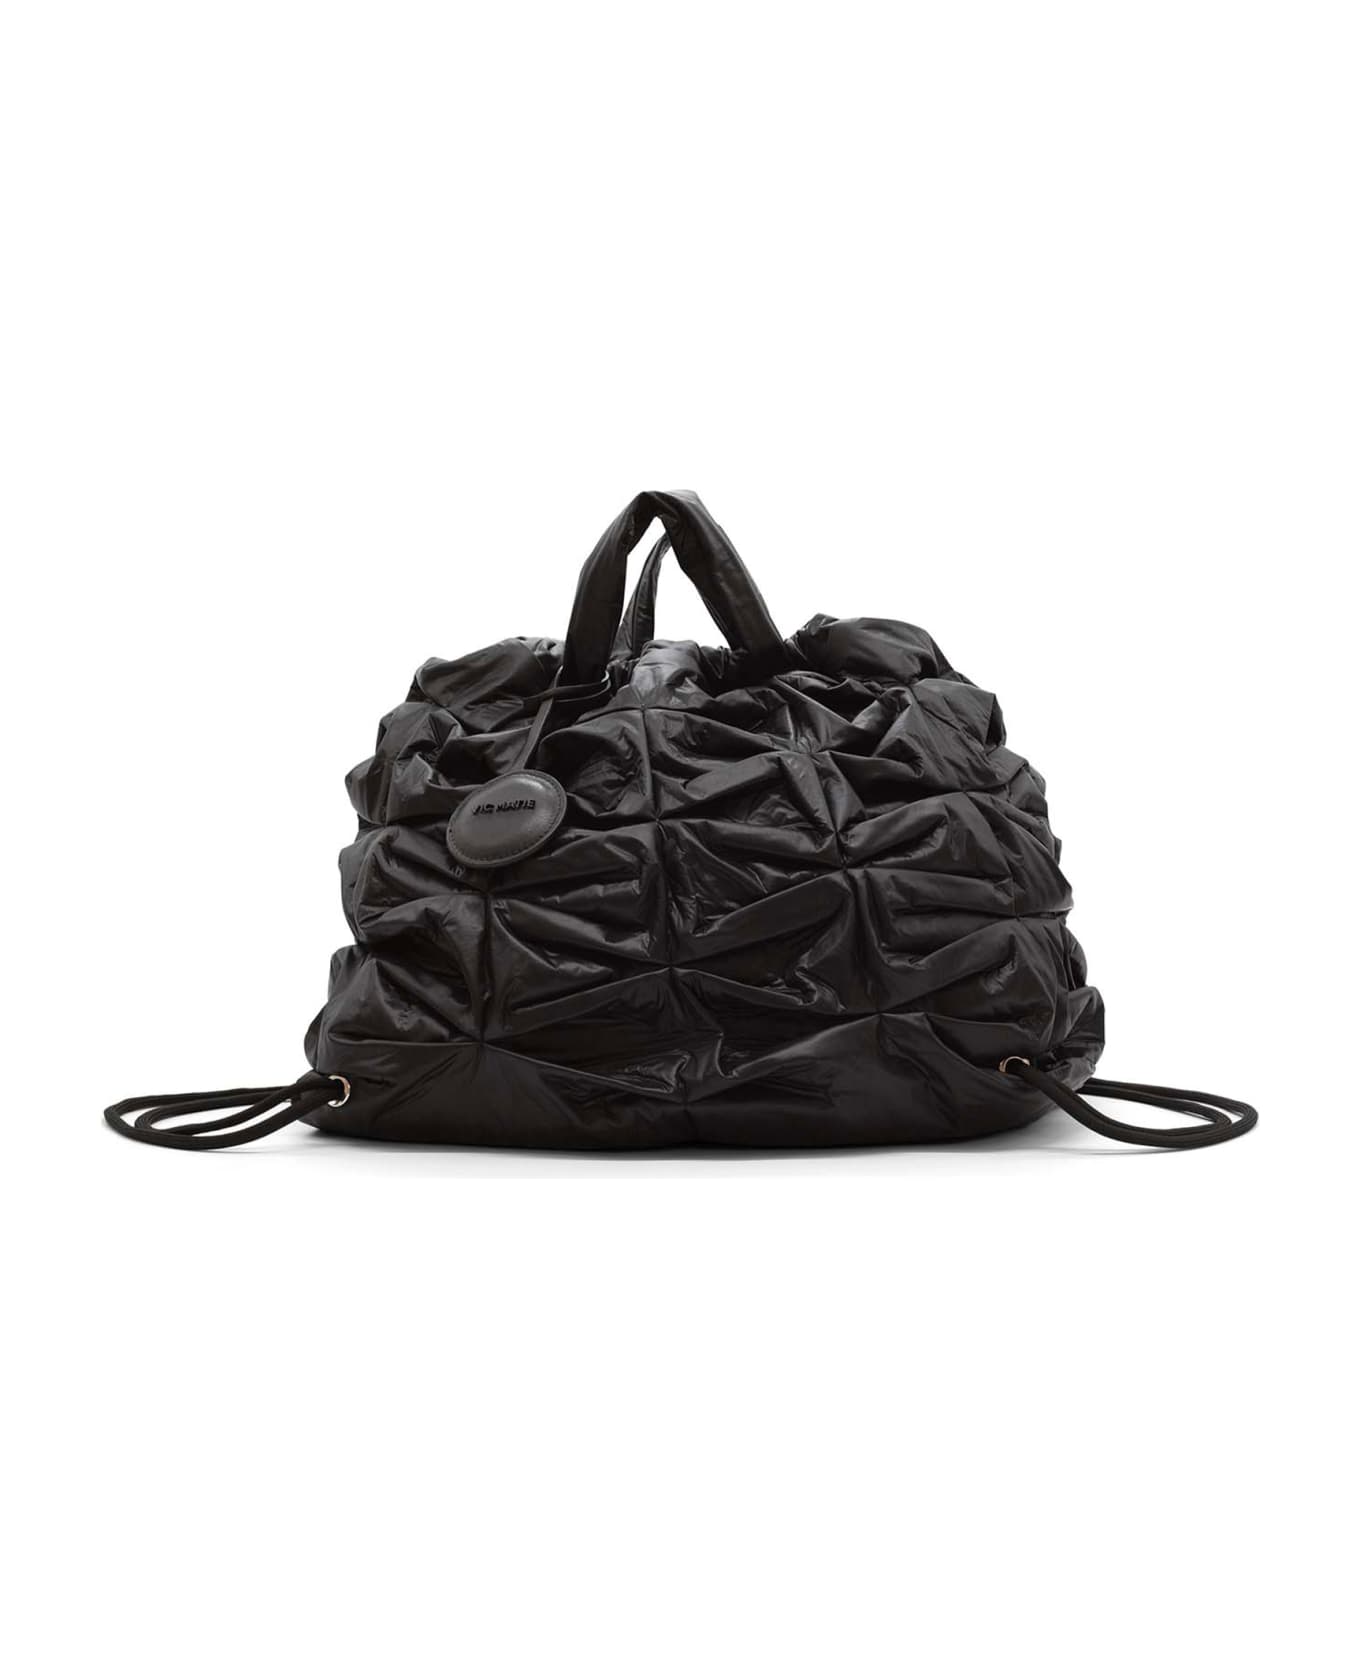 Vic Matié Large Black Nylon Handbag - BLACK